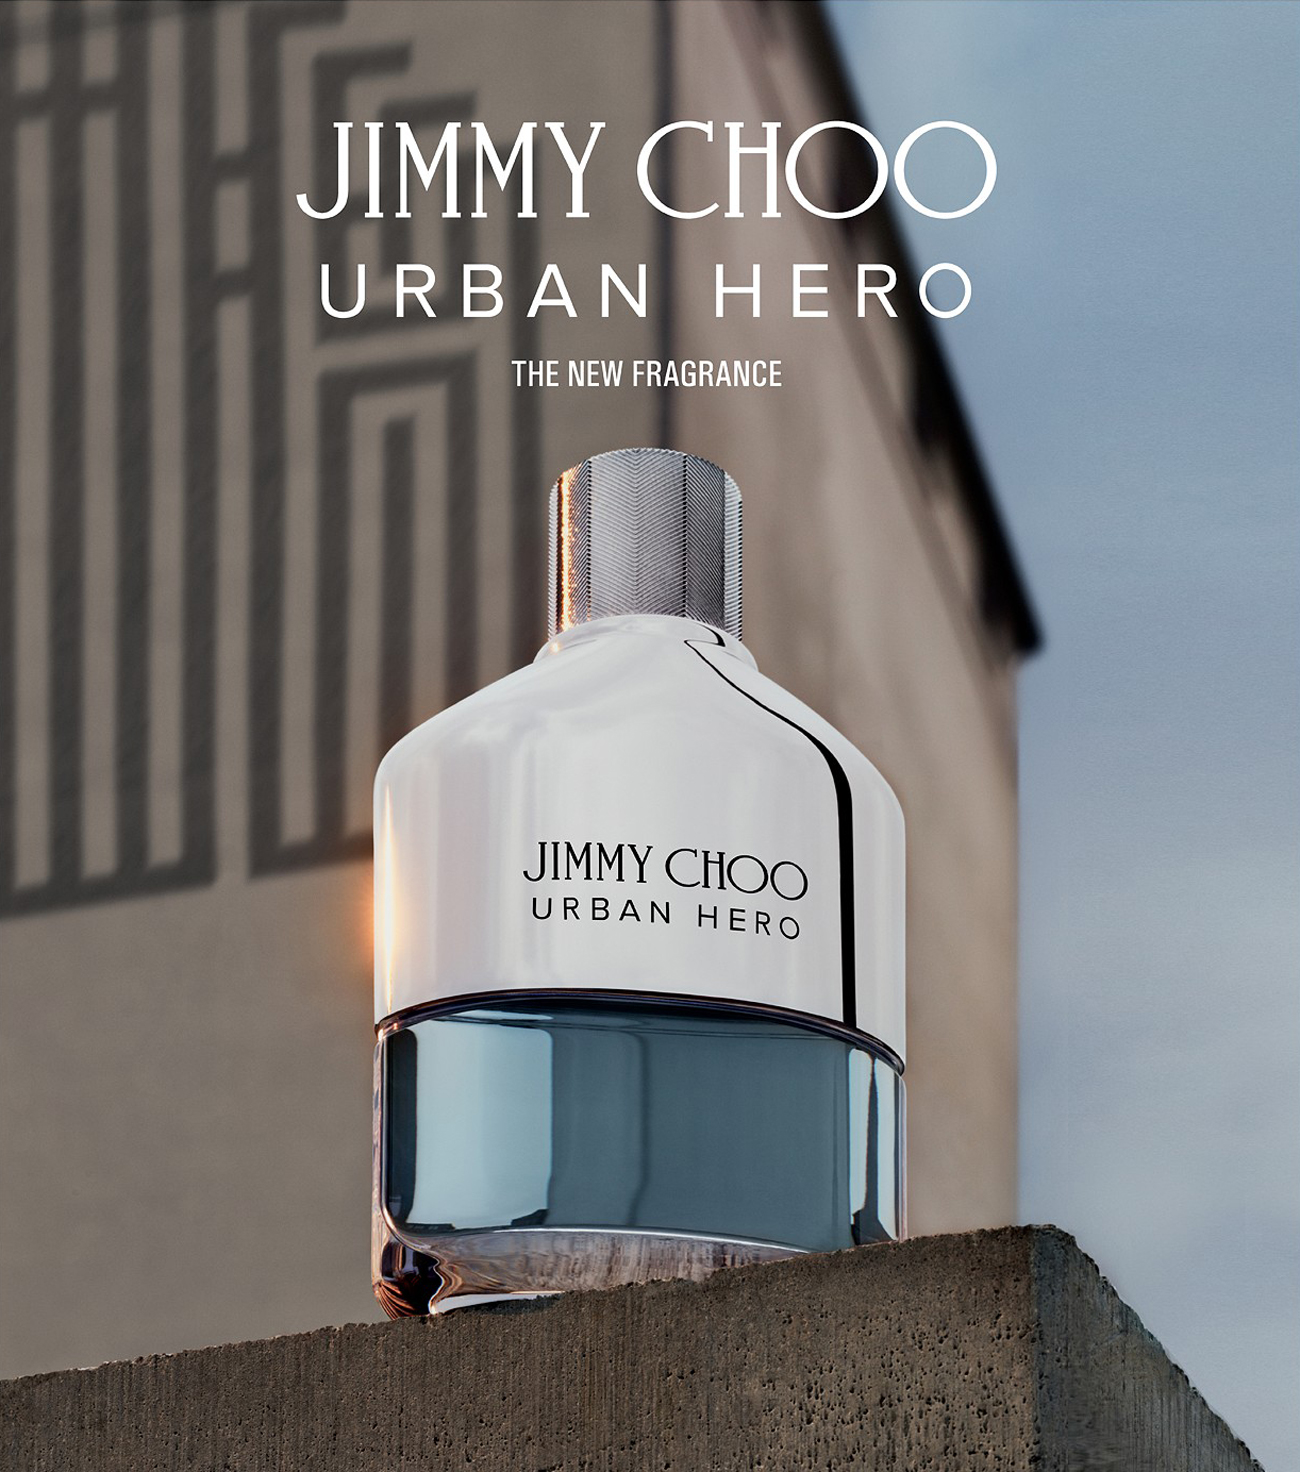 Jimmy Choo Urban Hero phù hợp với chàng trai năng động, luôn yêu thích di chuyển và tràn đầy năng lượng.